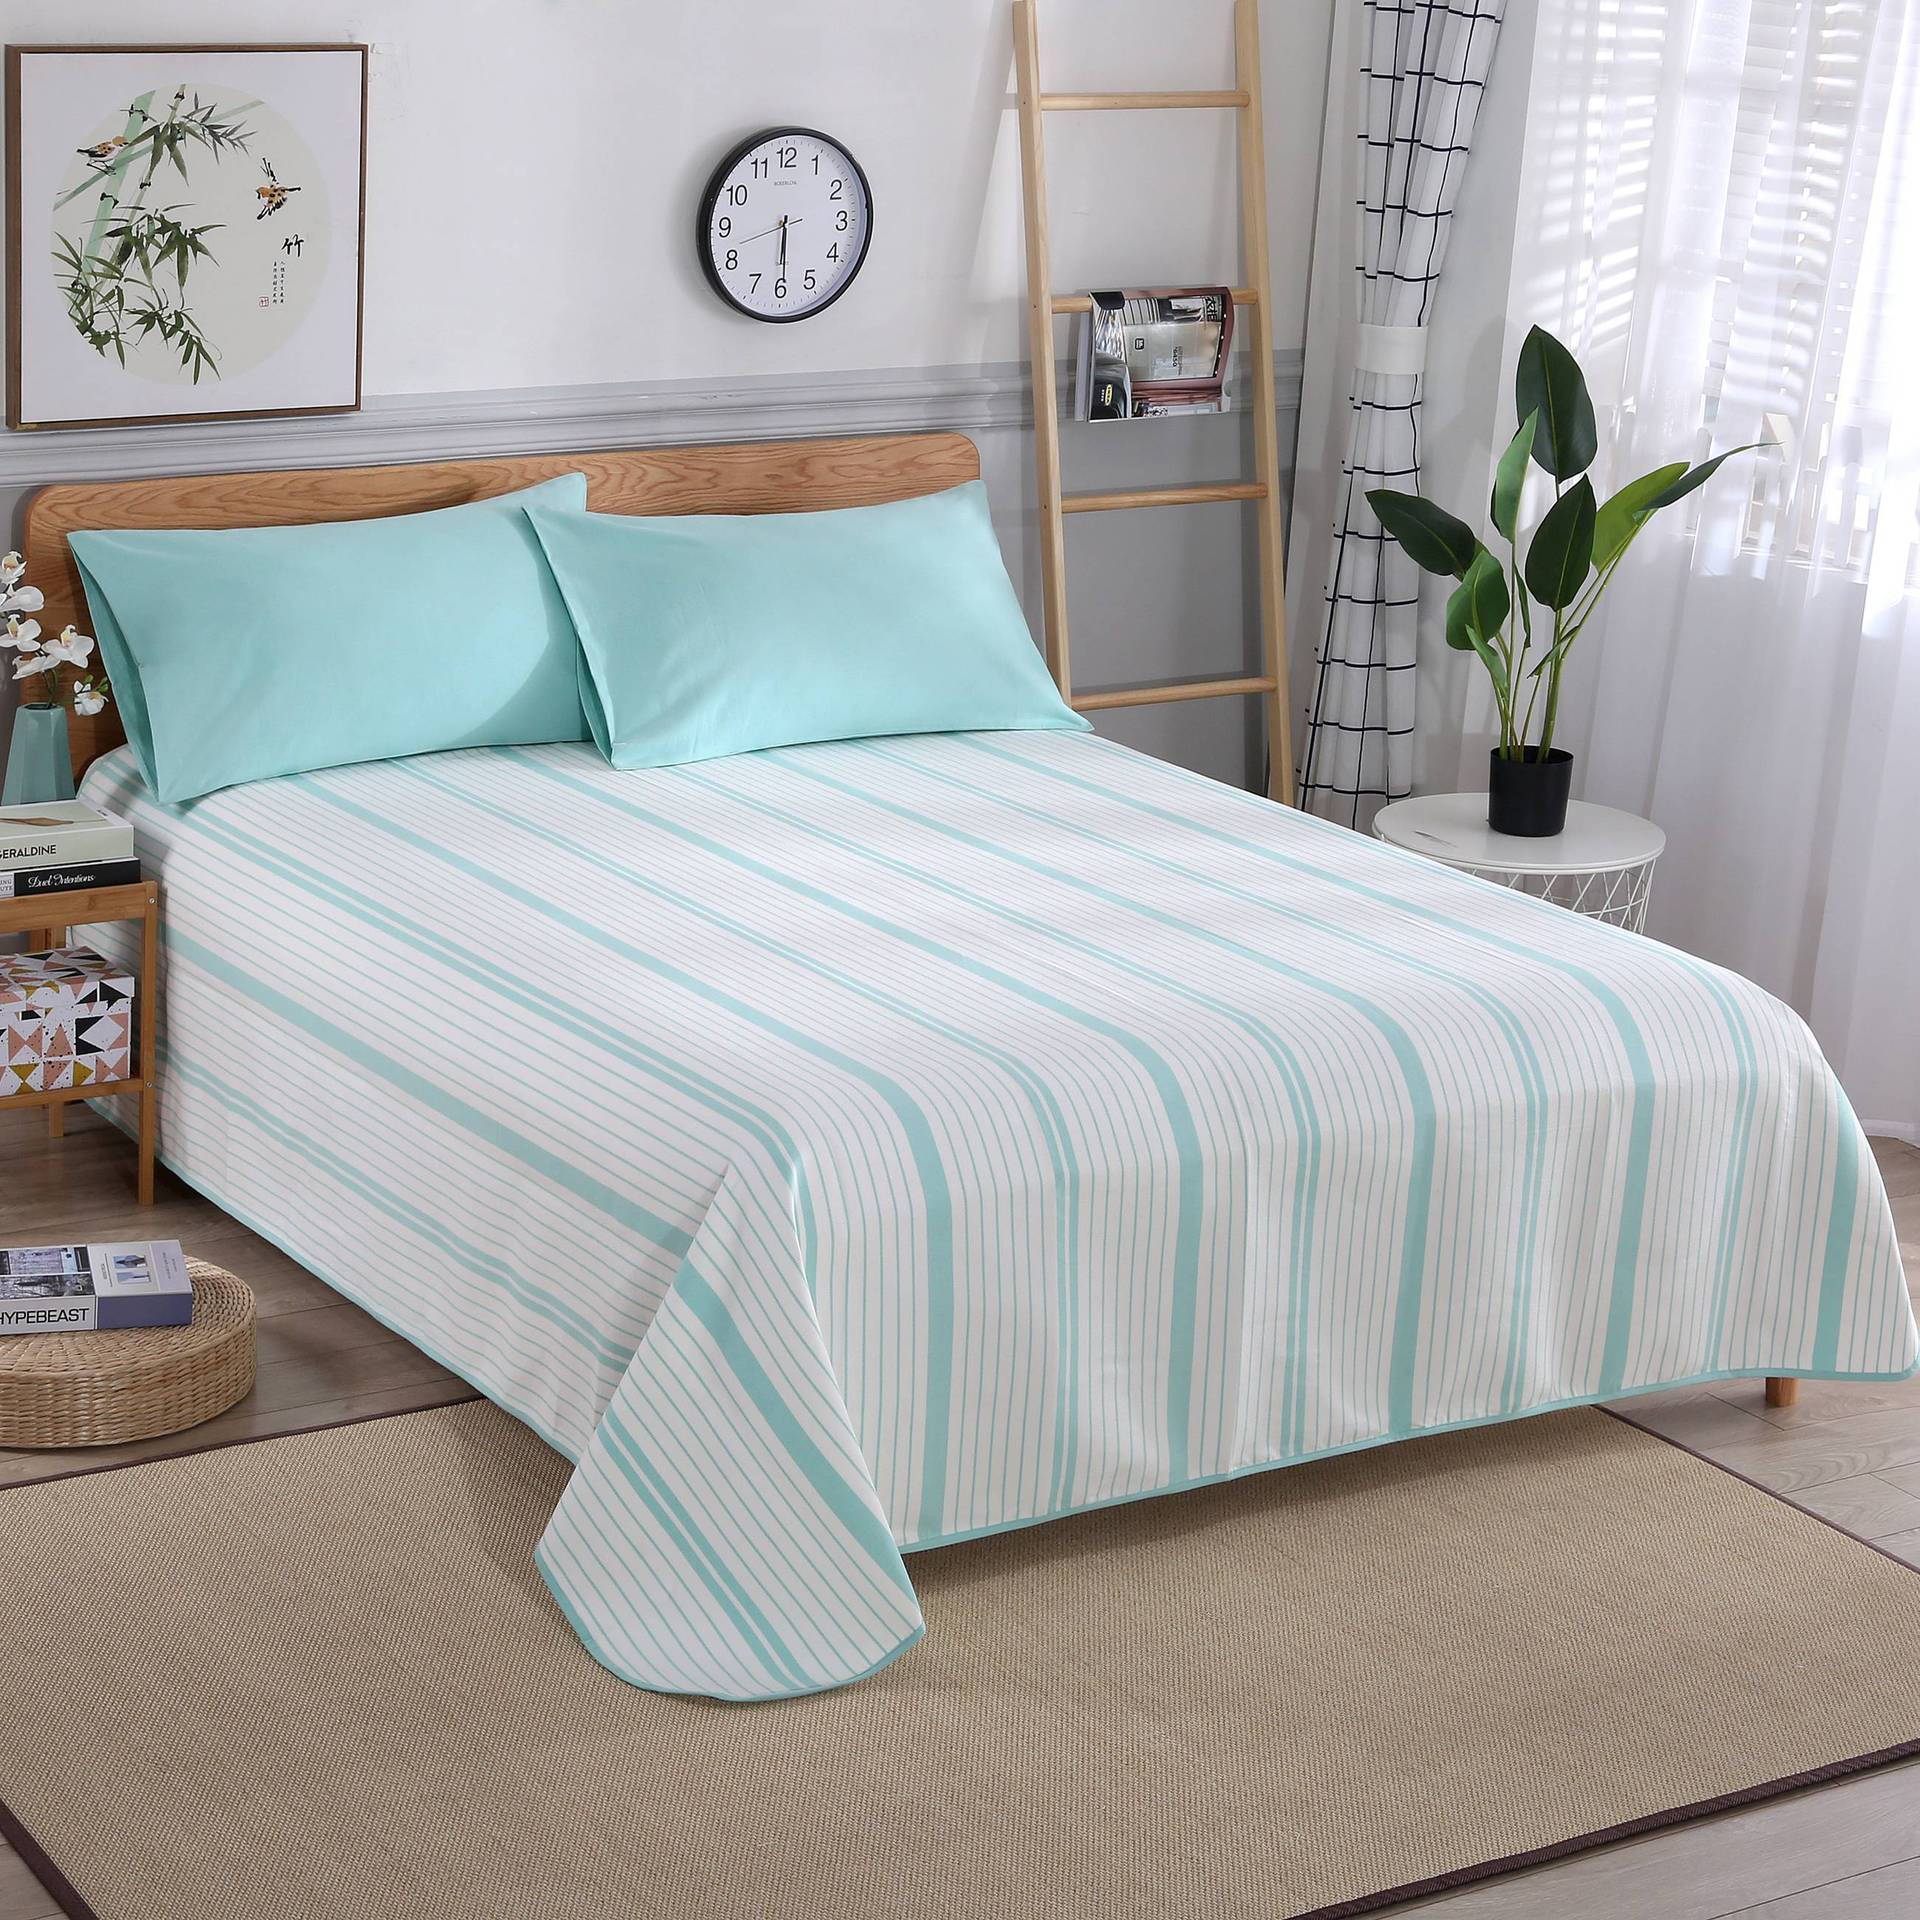 工厂直销纯棉粗布凉席床单一件代发可机洗1.5/1.8米床绿白条